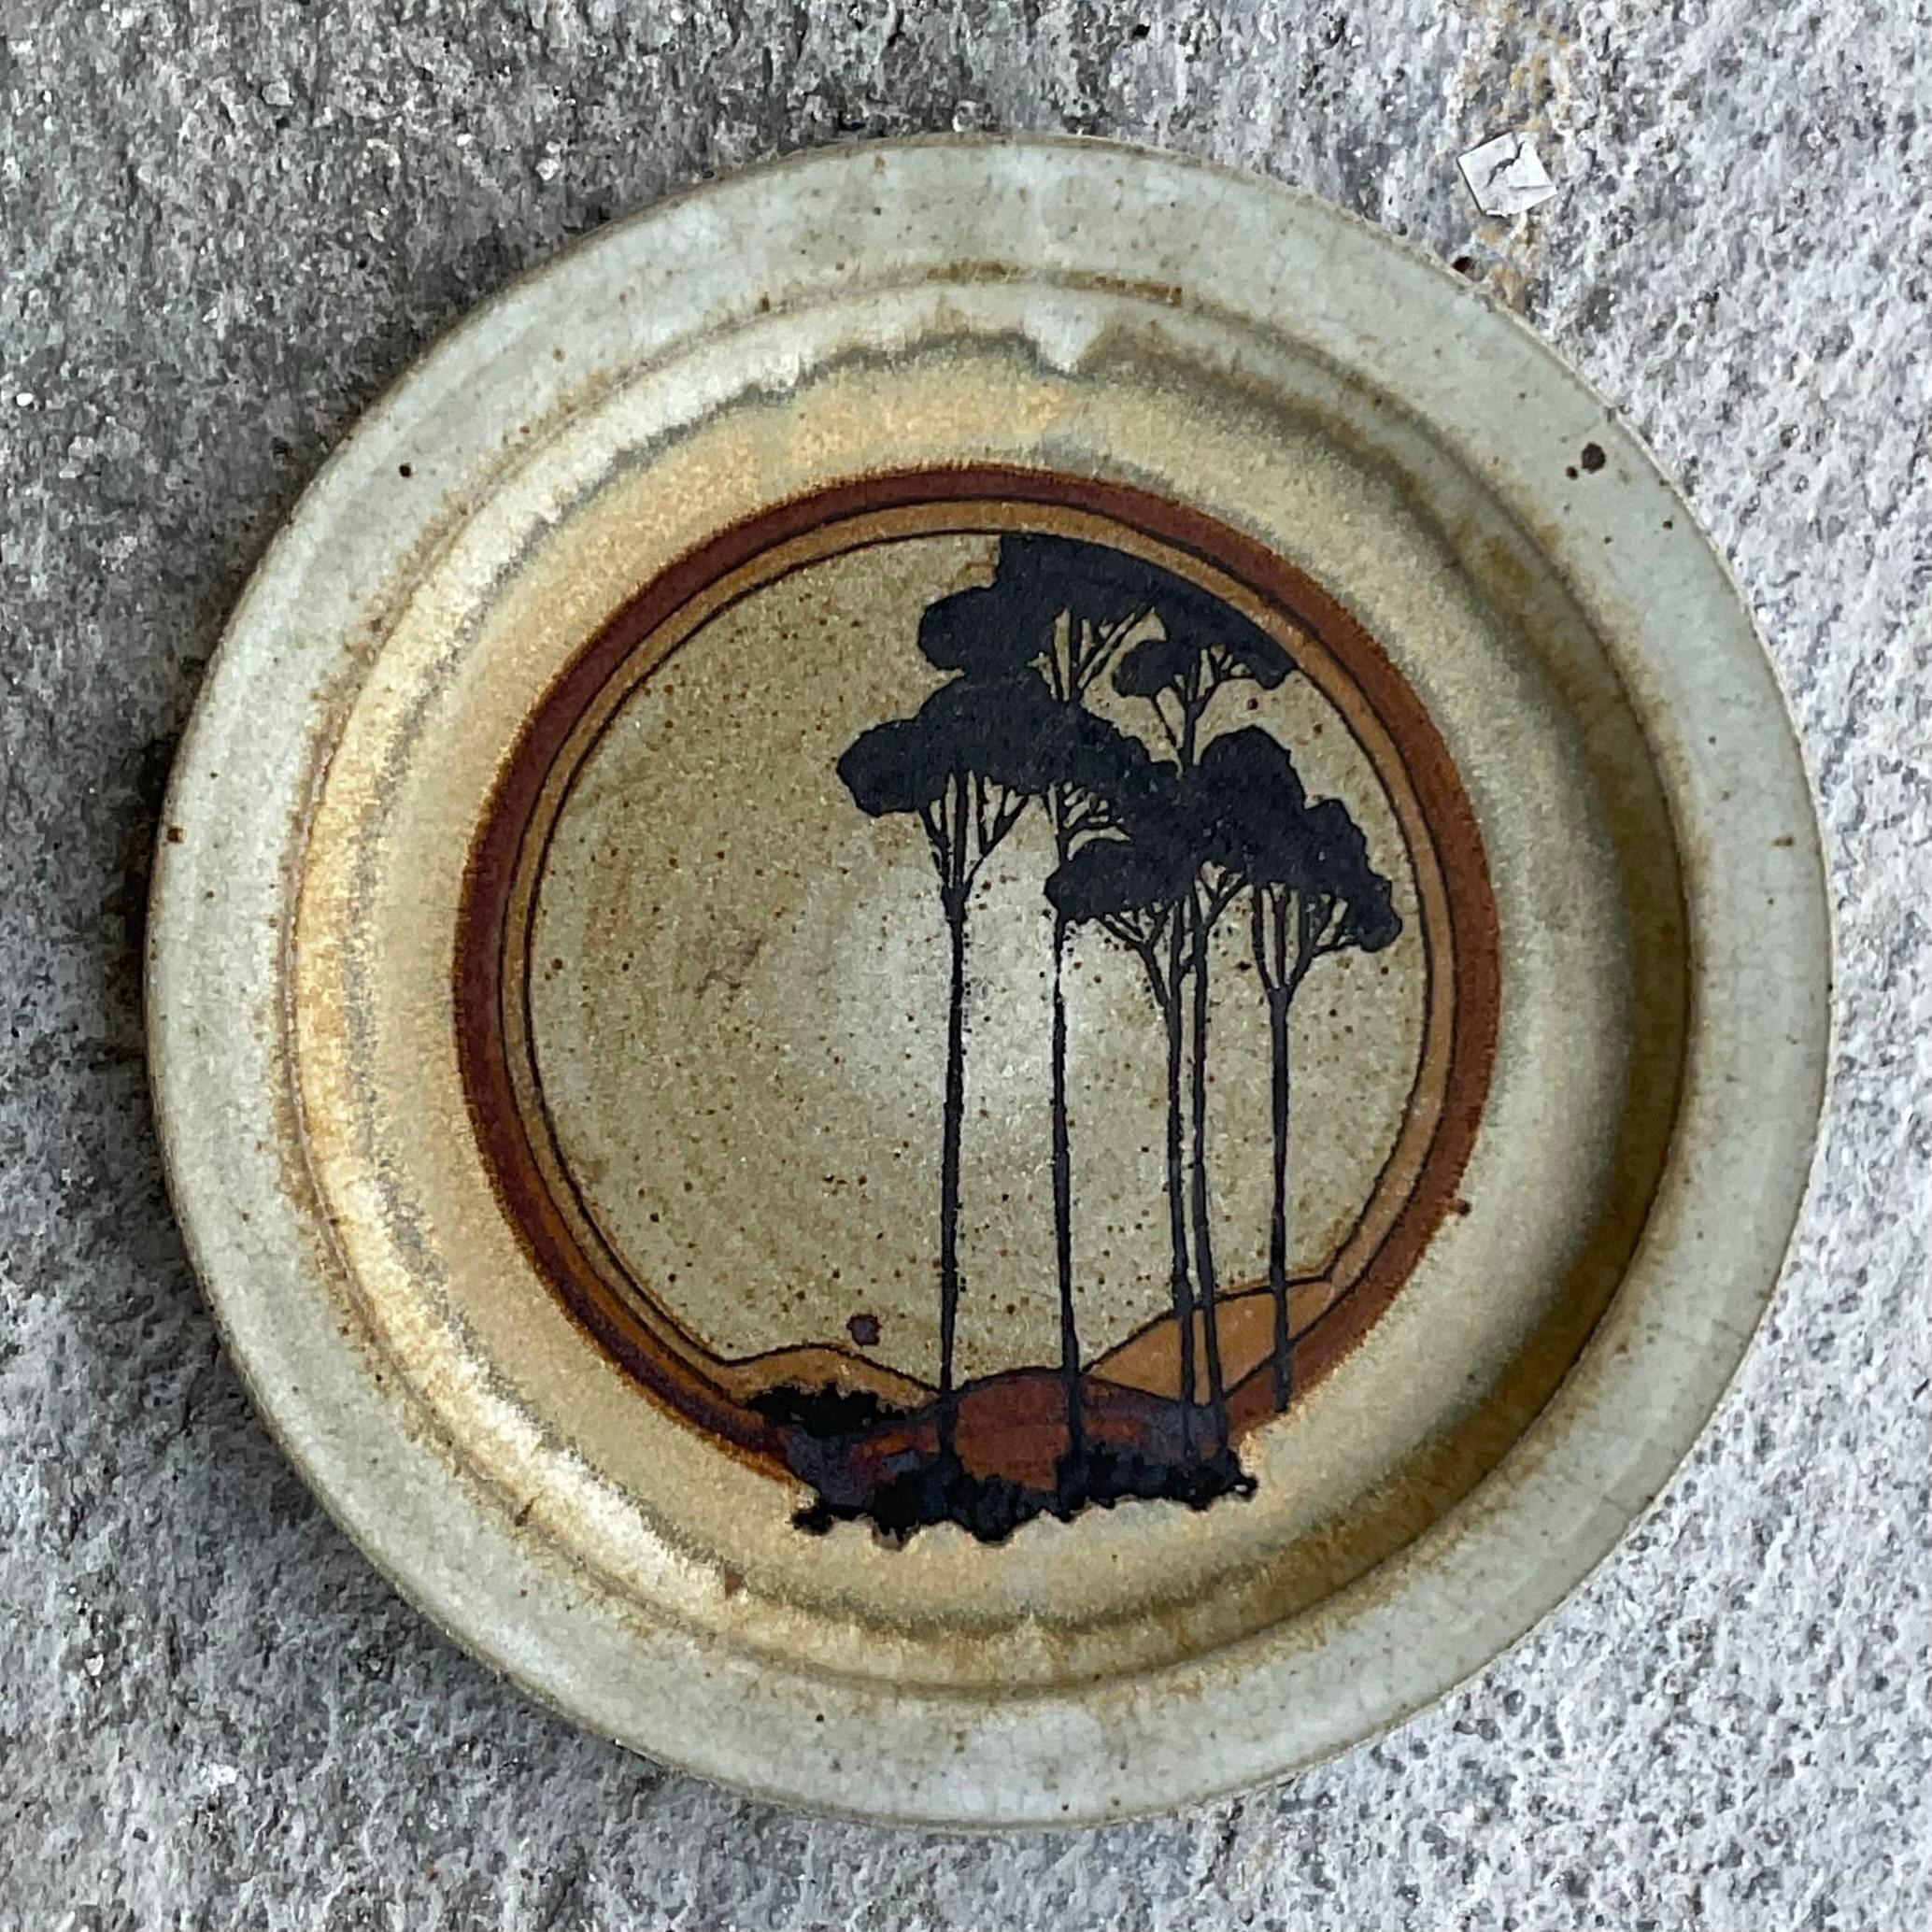 Eine fabelhafte Vintage Boho Studio Keramik Teller. Signiert und datiert 1974. Eine schicke grafische Komposition von Bäumen. Super cool. Erworben aus einem Nachlass in Palm Beach 